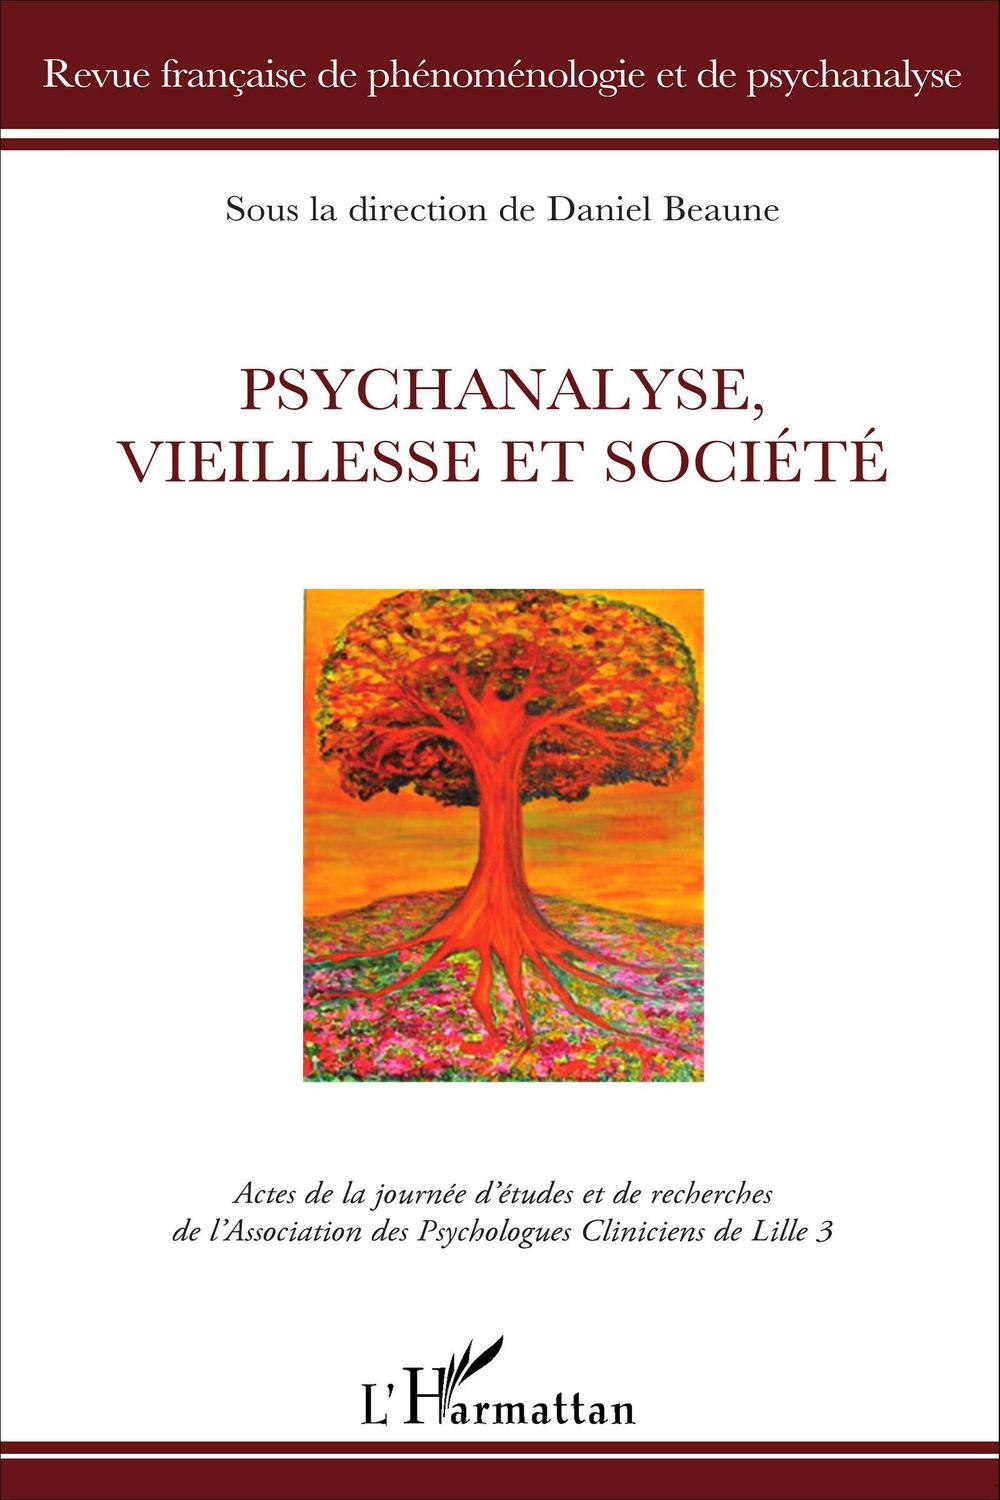 Psychanalyse, vieillesse et société - Daniel Beaume